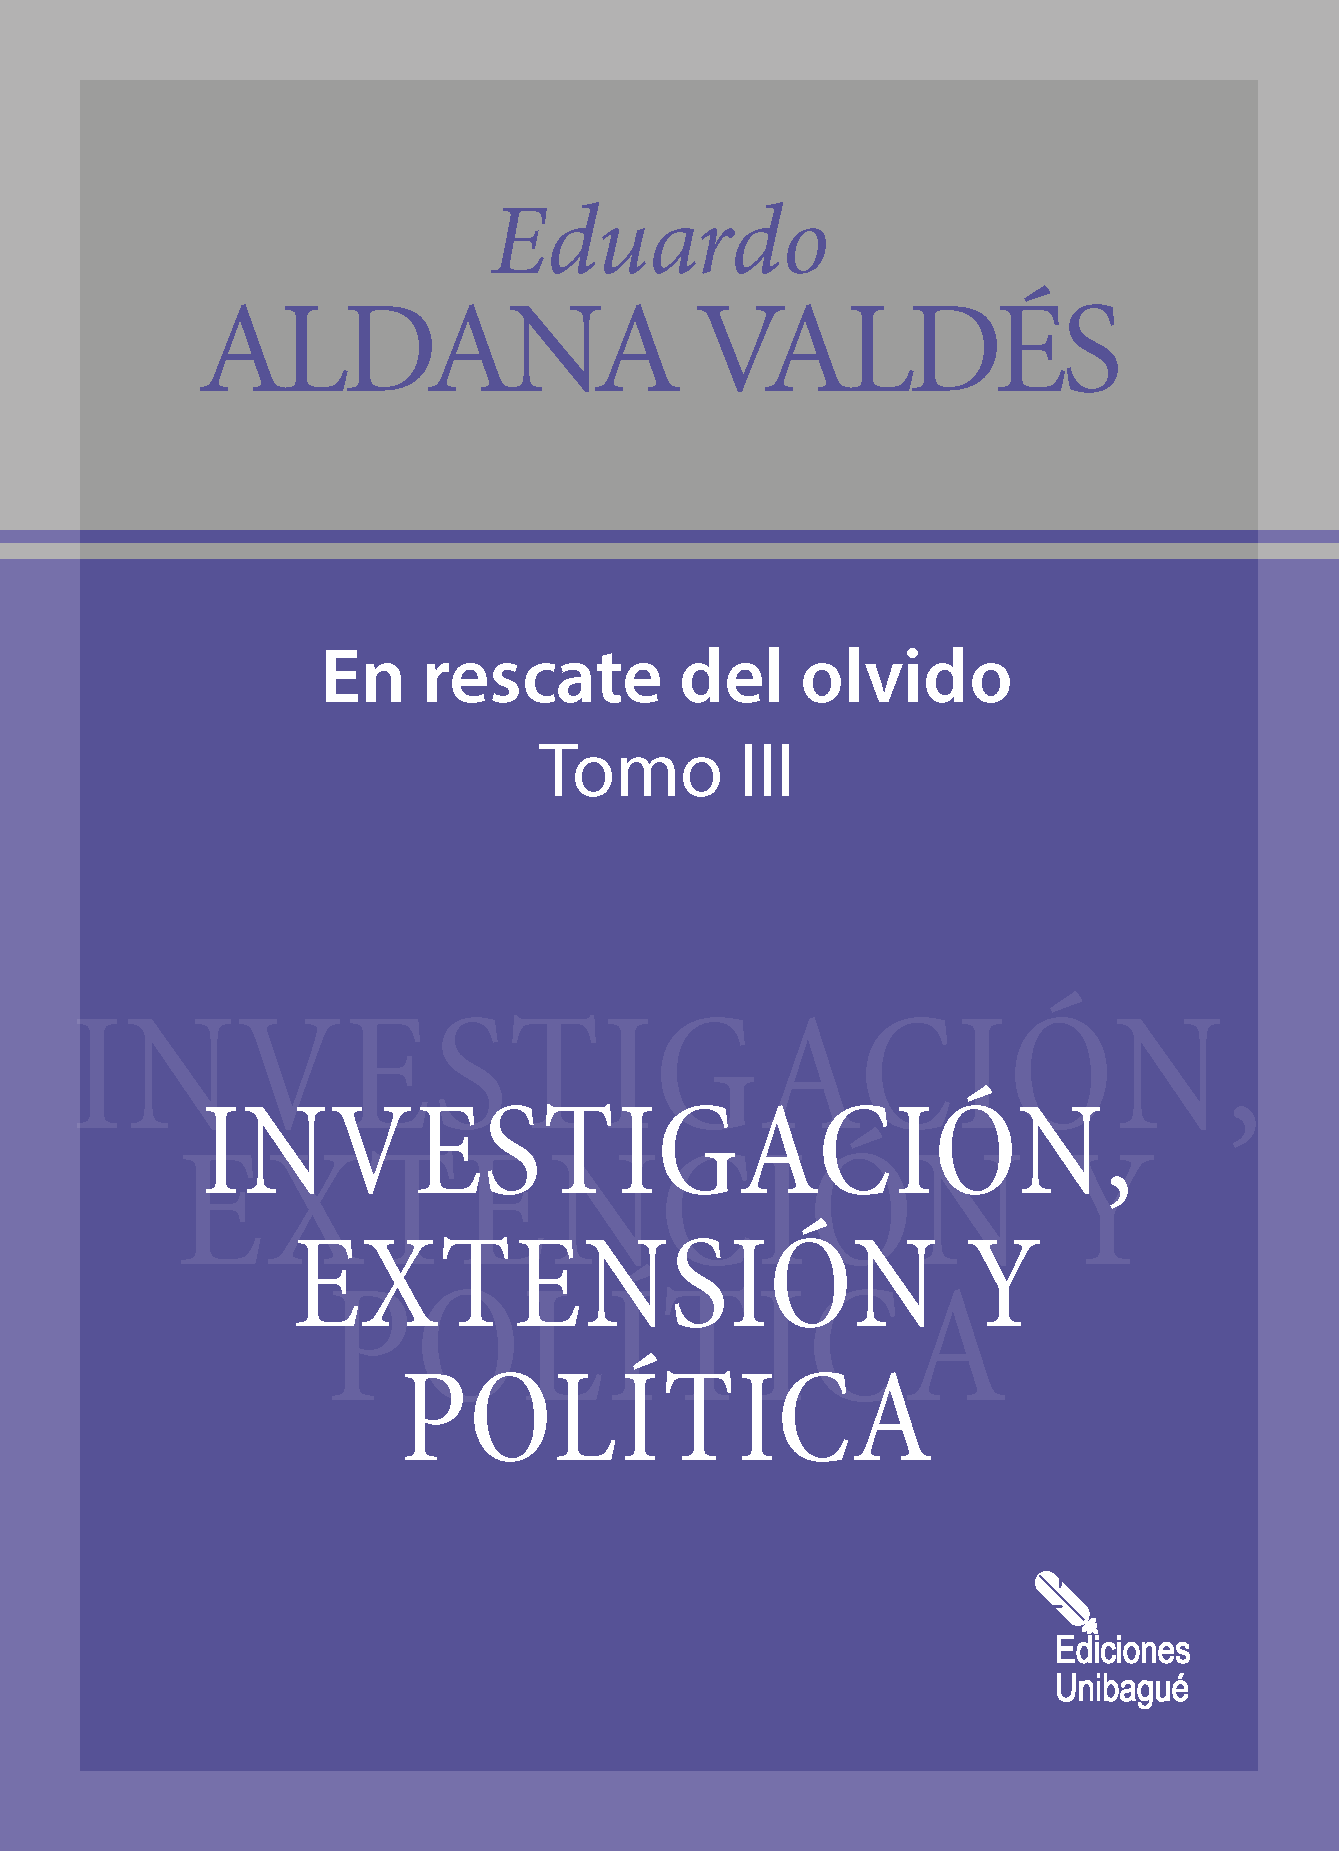 Cover of Investigación, extensión y política